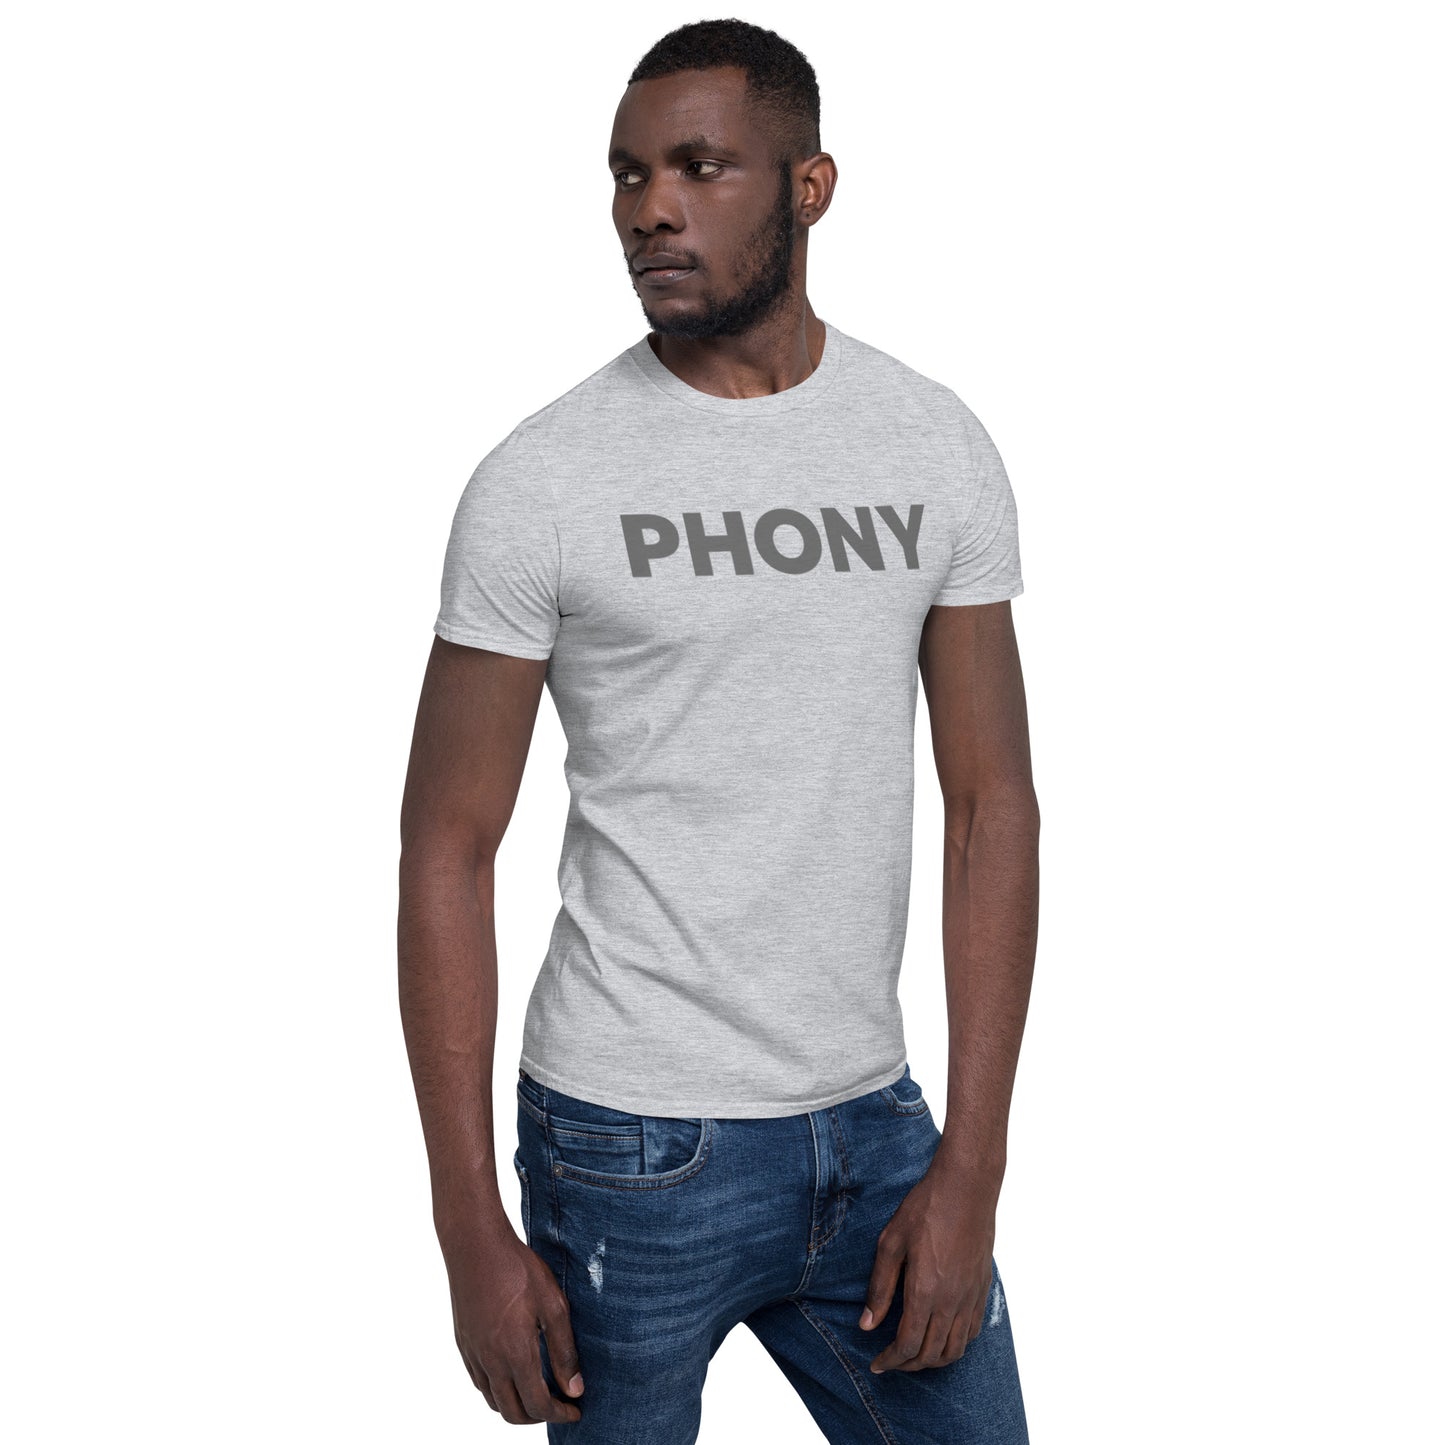 PHONY Short-Sleeve Unisex T-Shirt